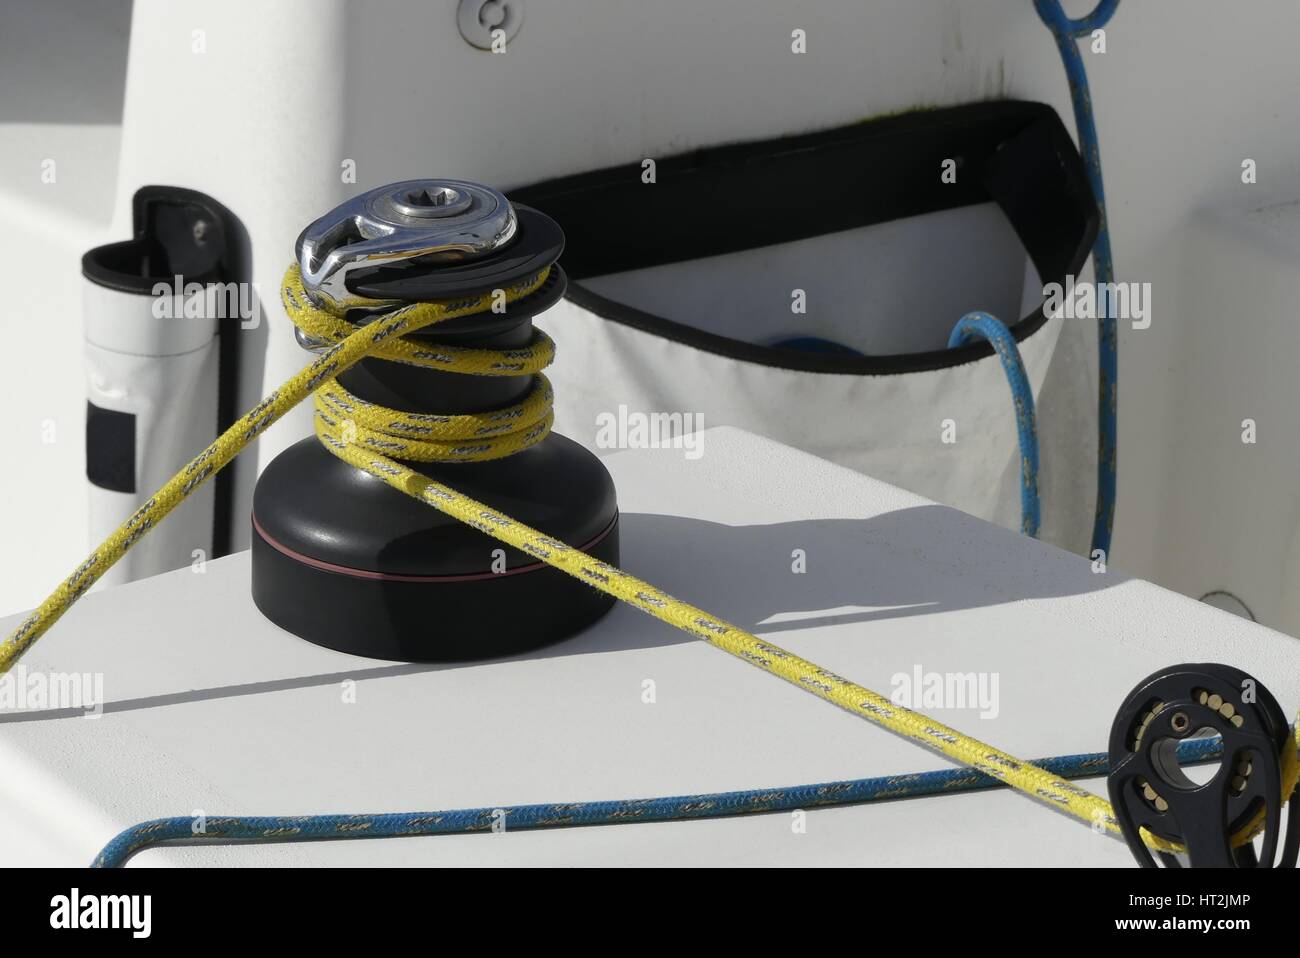 Détails d'une corde jaune sécurisée sur le treuil sur bateau à voile racer, concept nautique Banque D'Images